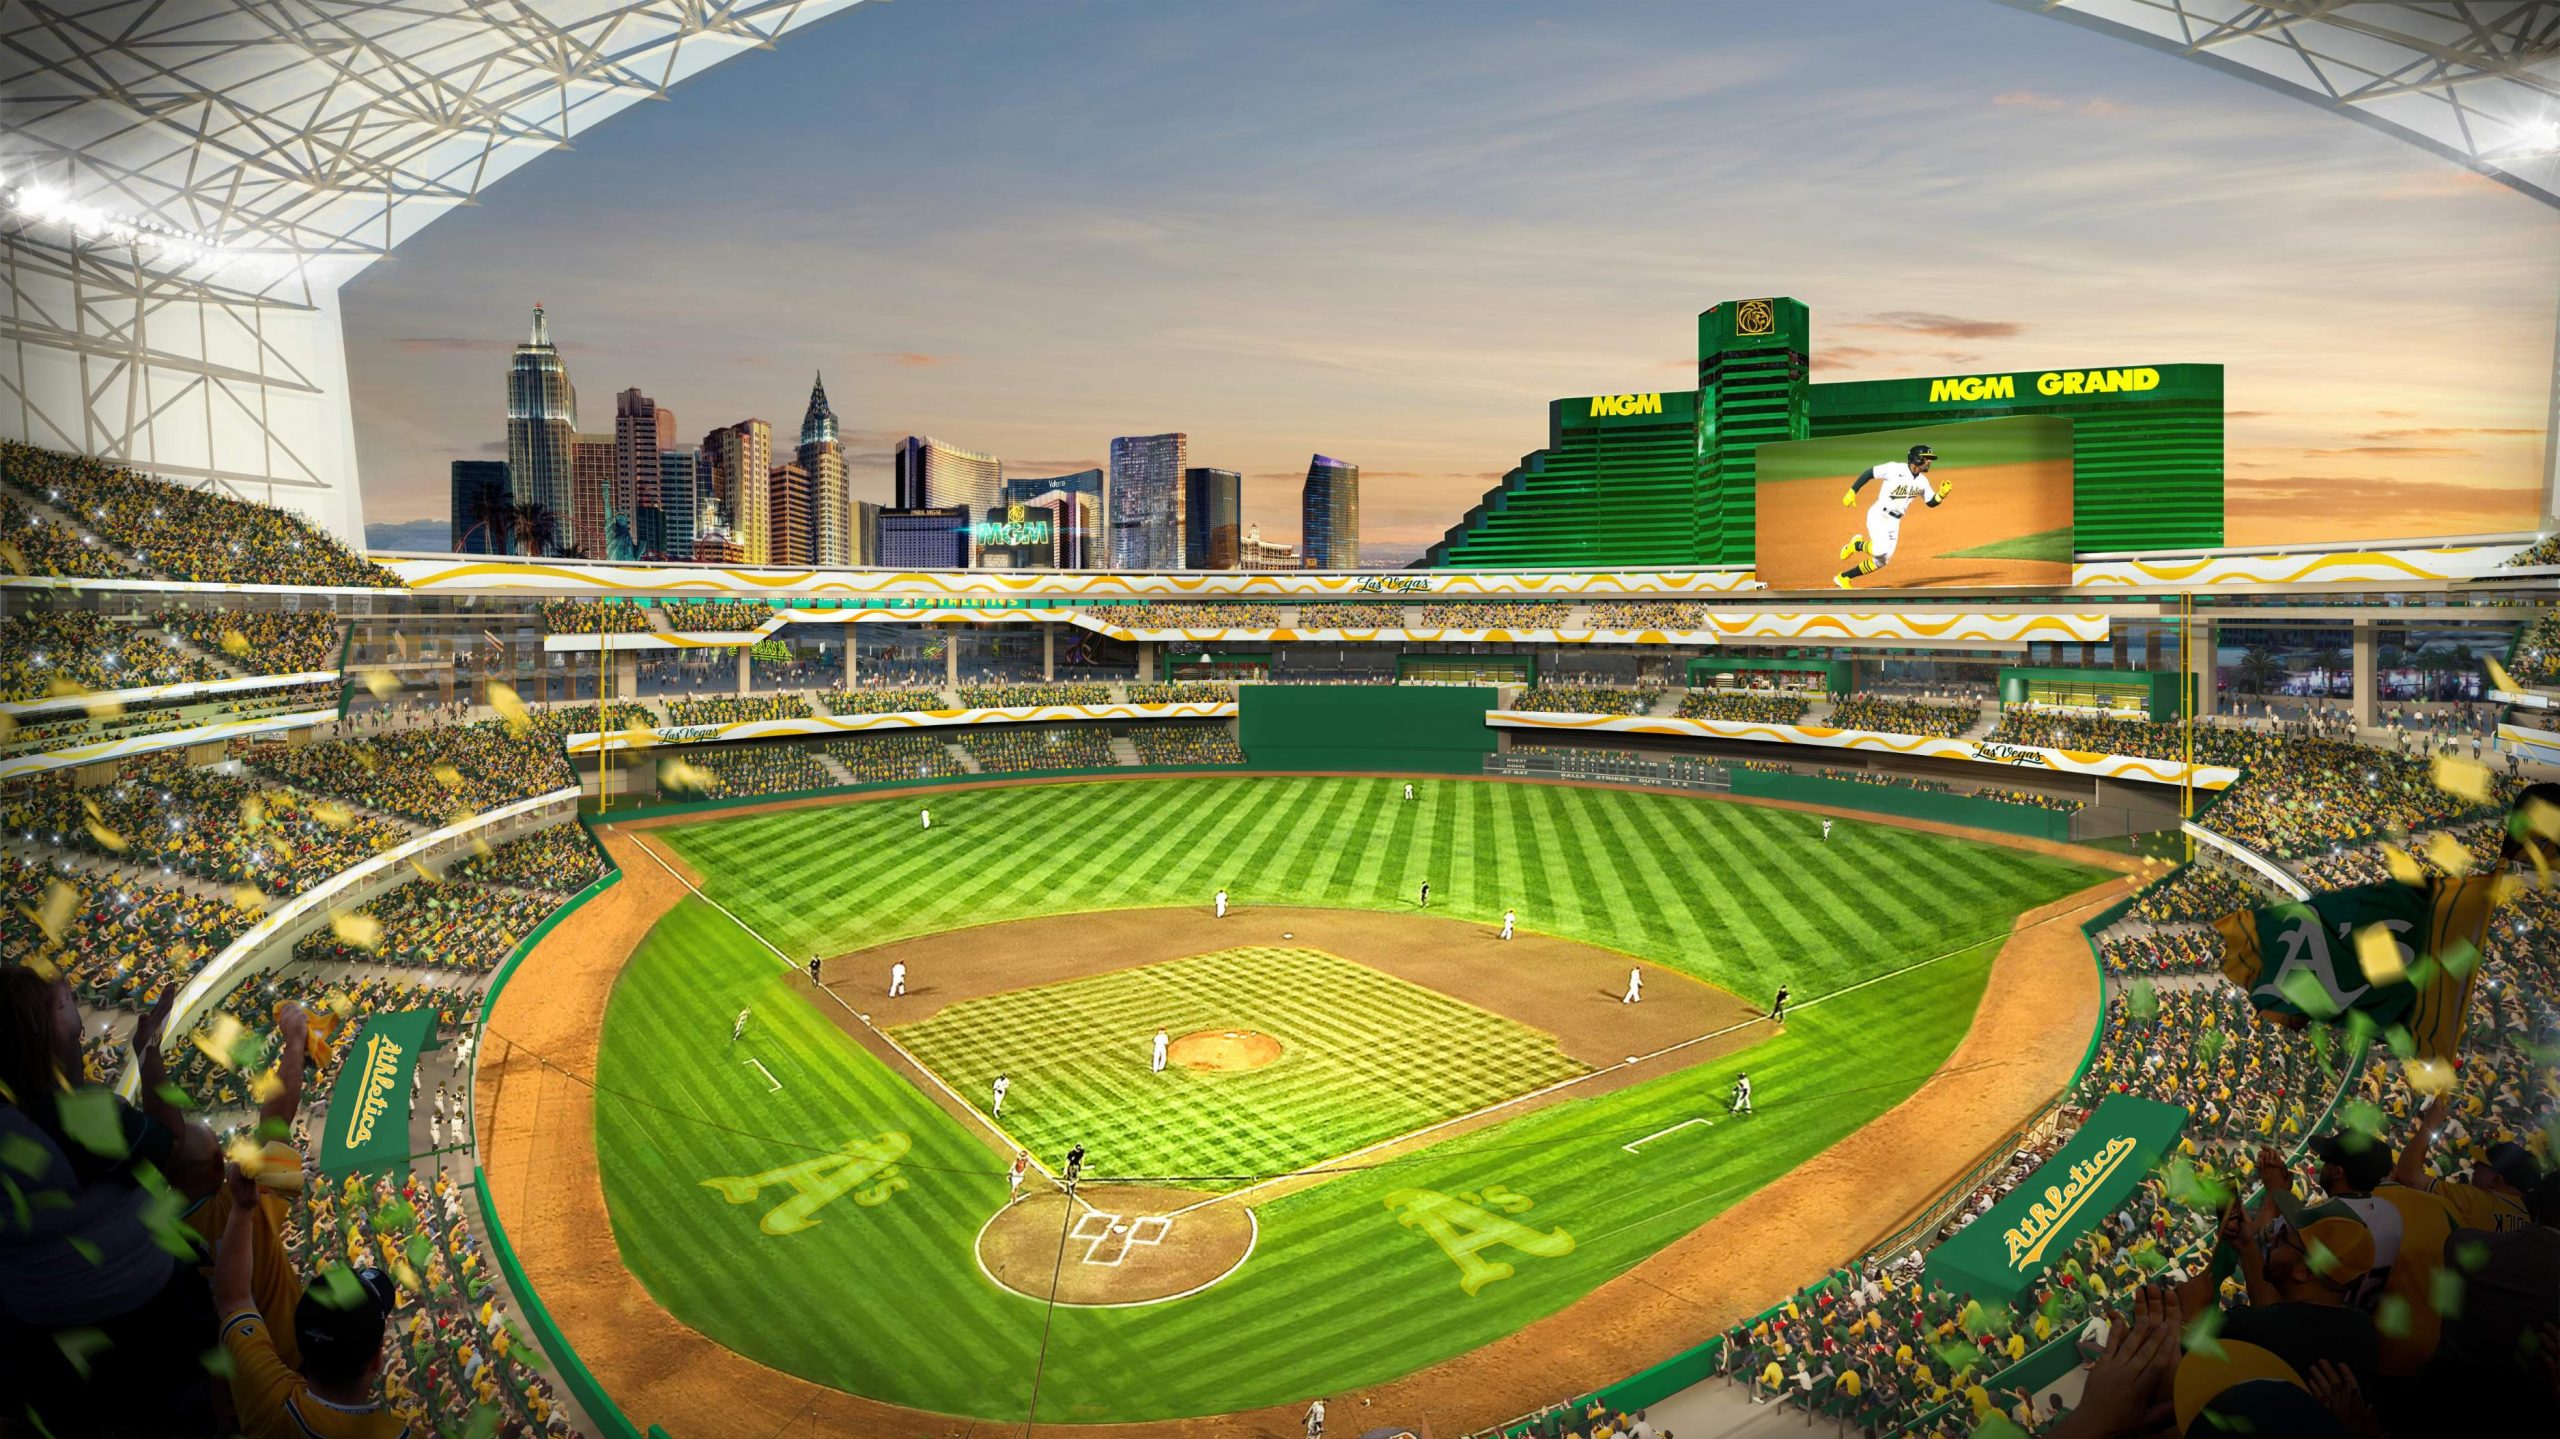 Oakland Athletics Las Vegas ballpark rendering...